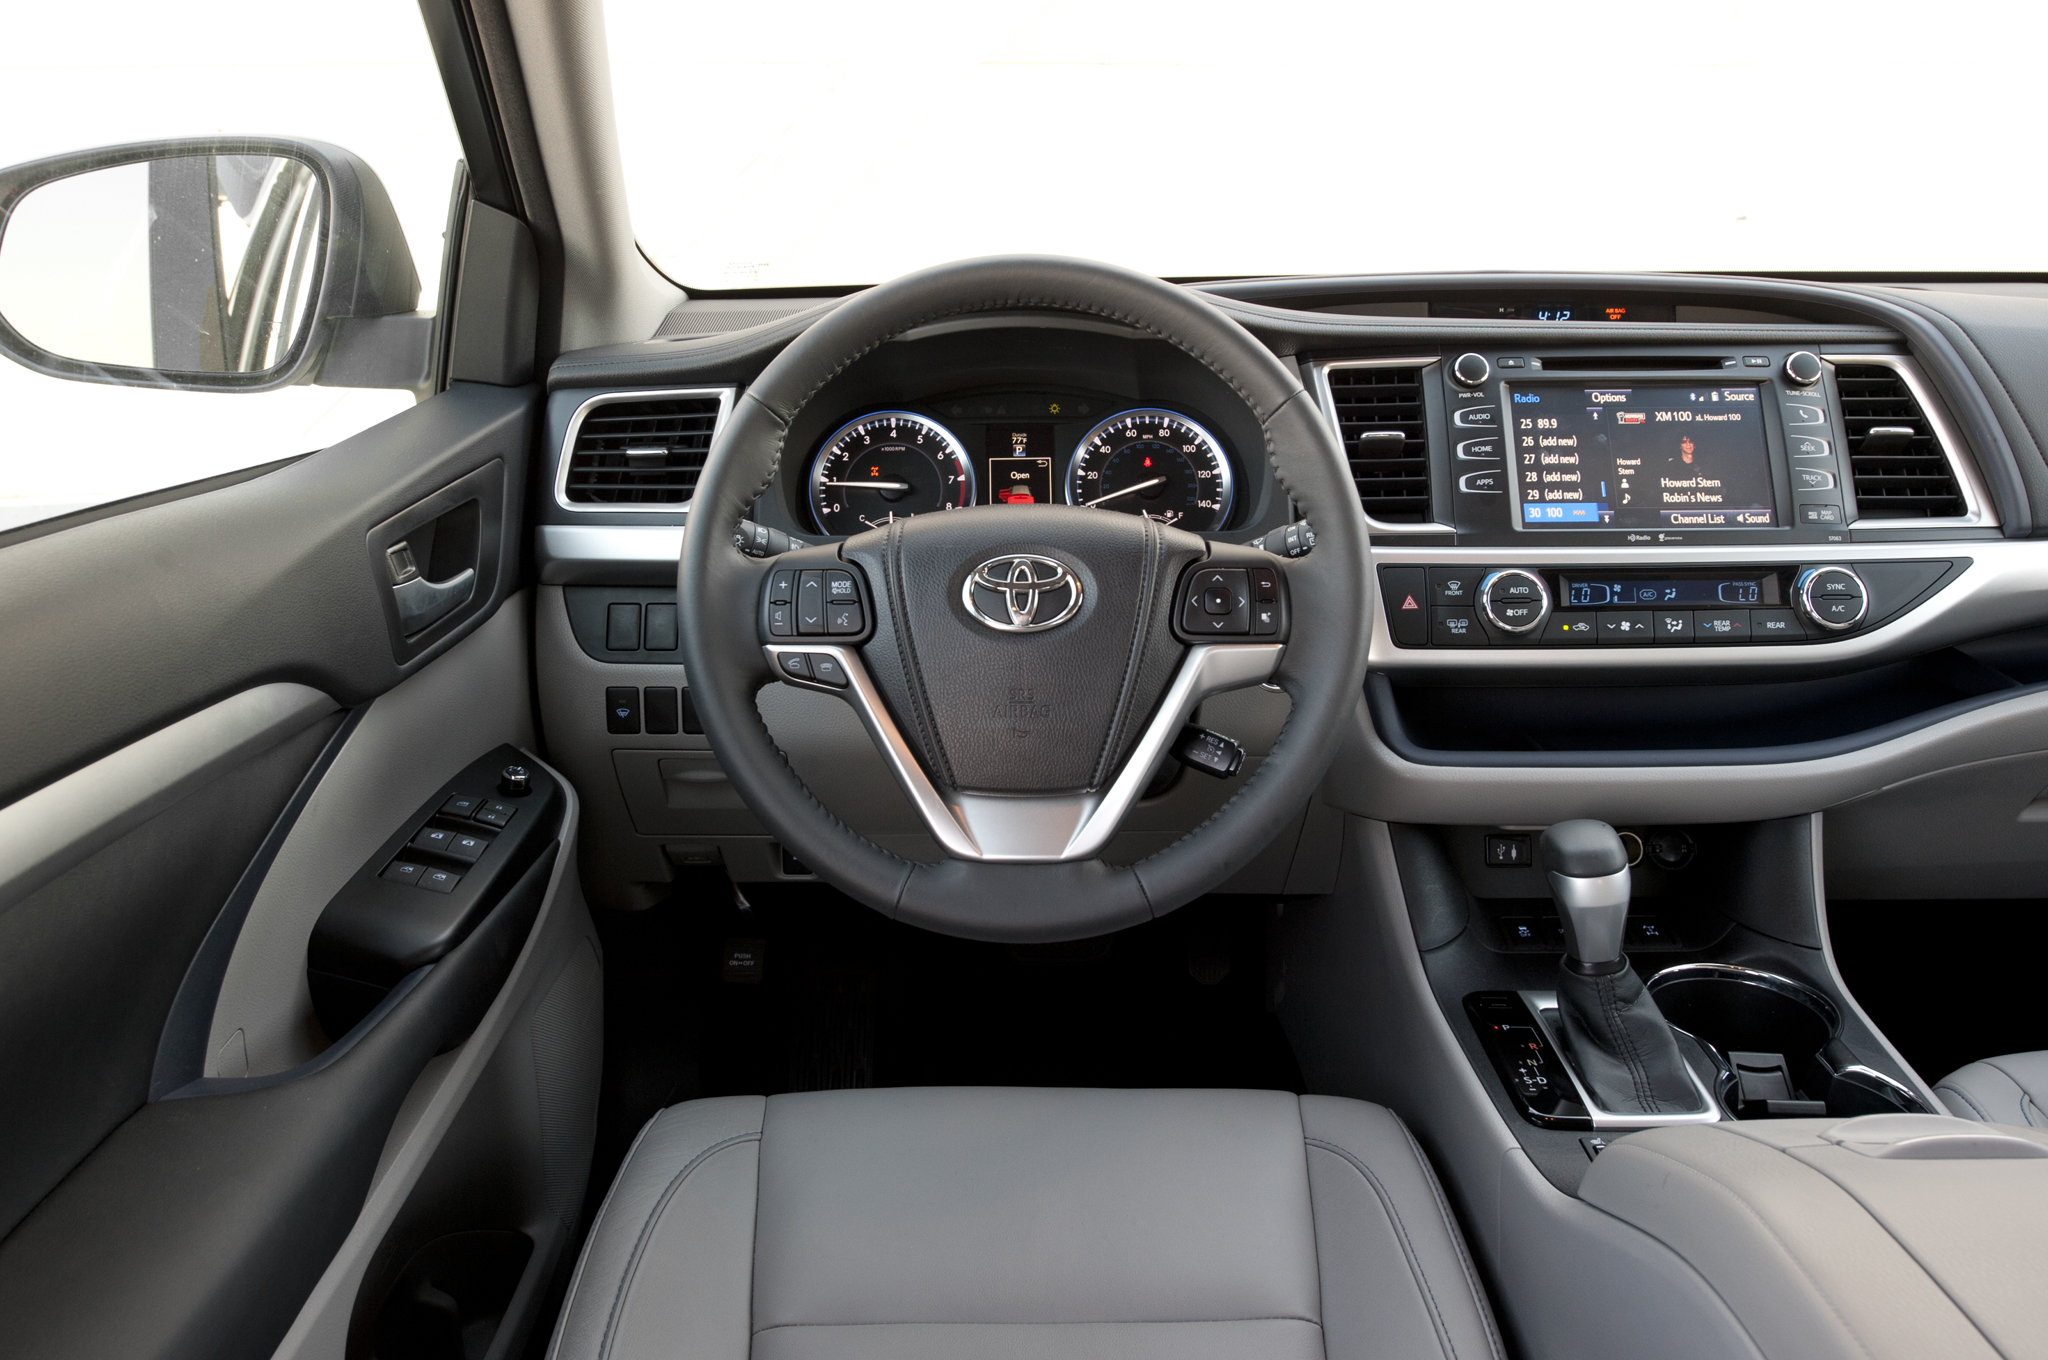 Không gian nội thất thoáng đãng và trang bị hiện đại của Toyota Highlander 2015 là điểm mạnh khi so sánh xe ô tô 